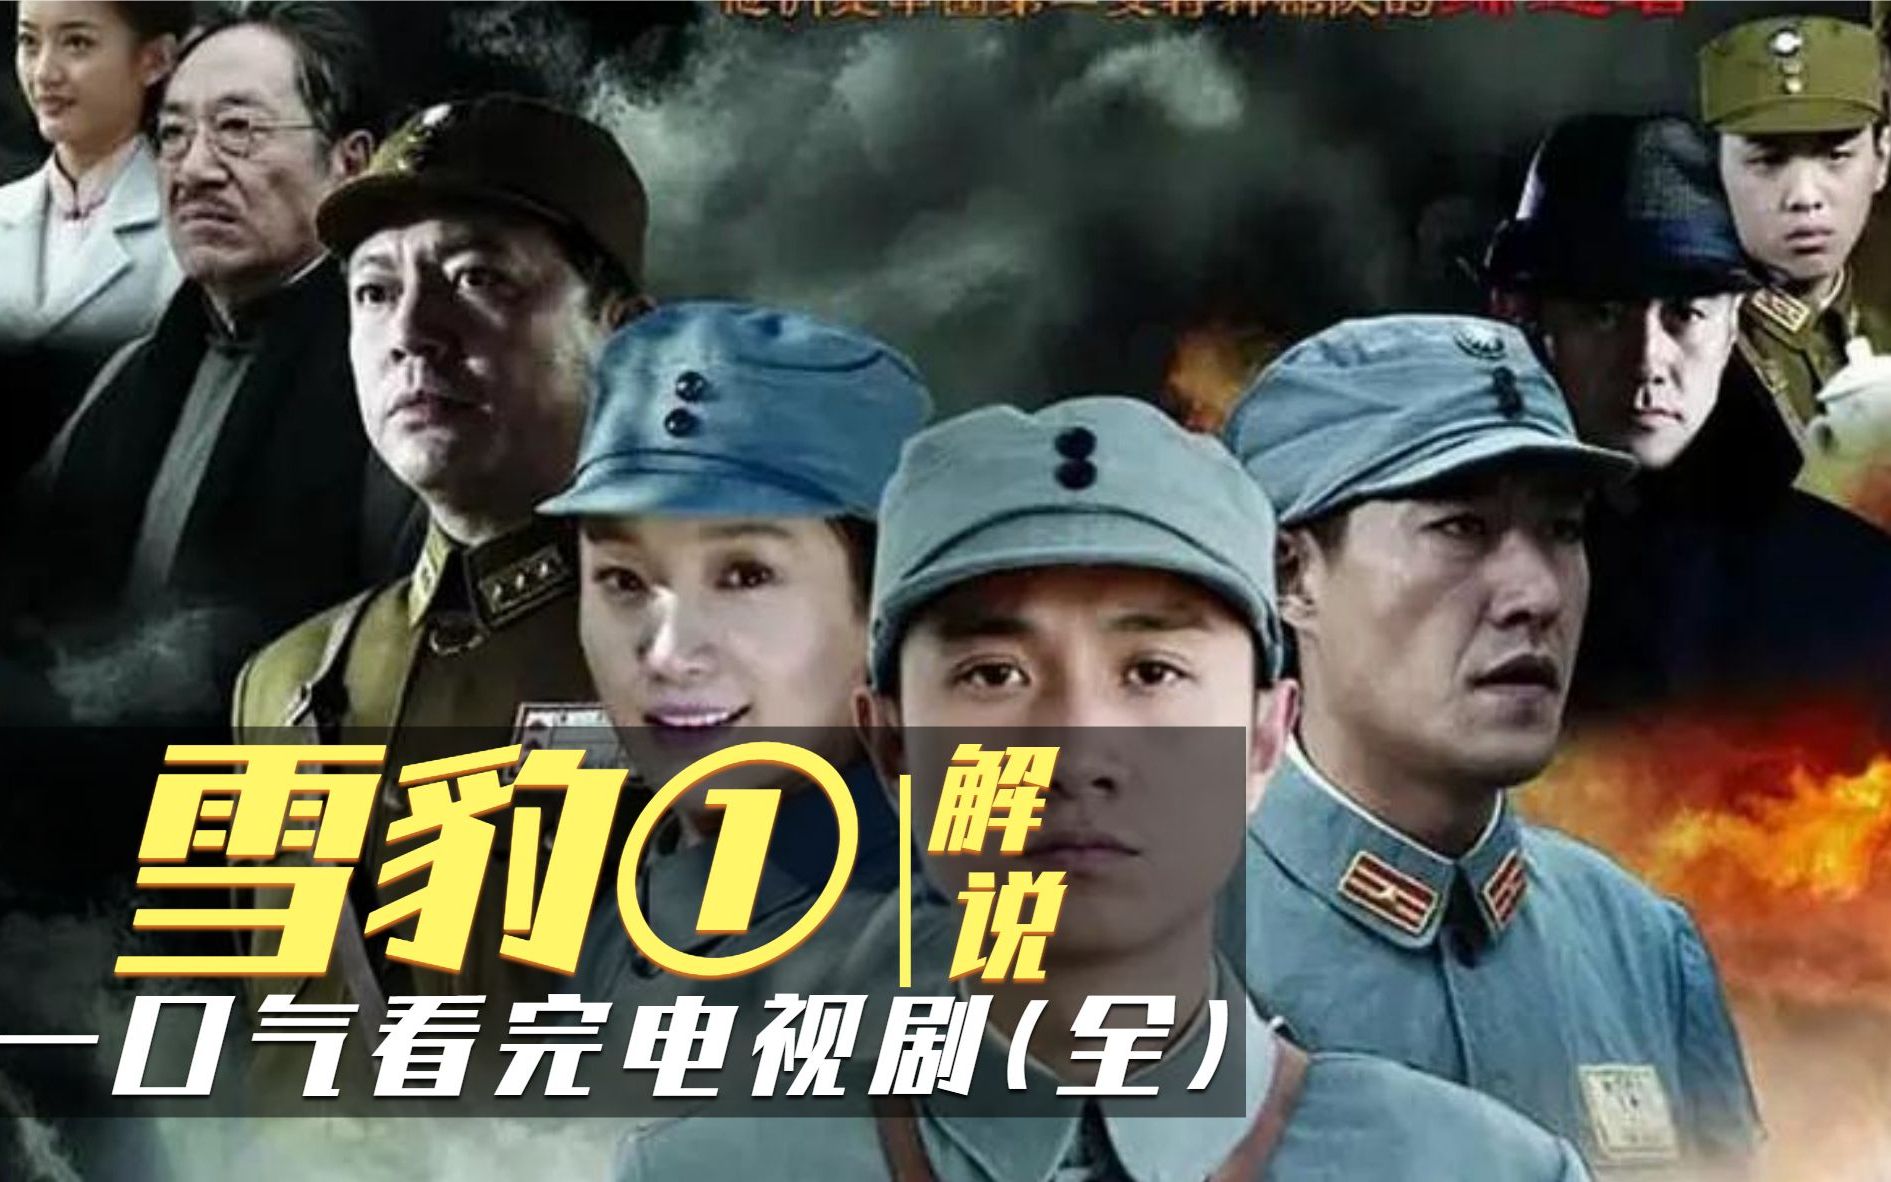 电视剧《雪豹》中的配角刘志辉扮演者张若昀的图片我想要来看一看吖！哪位朋友有啊，在网上查不到内?